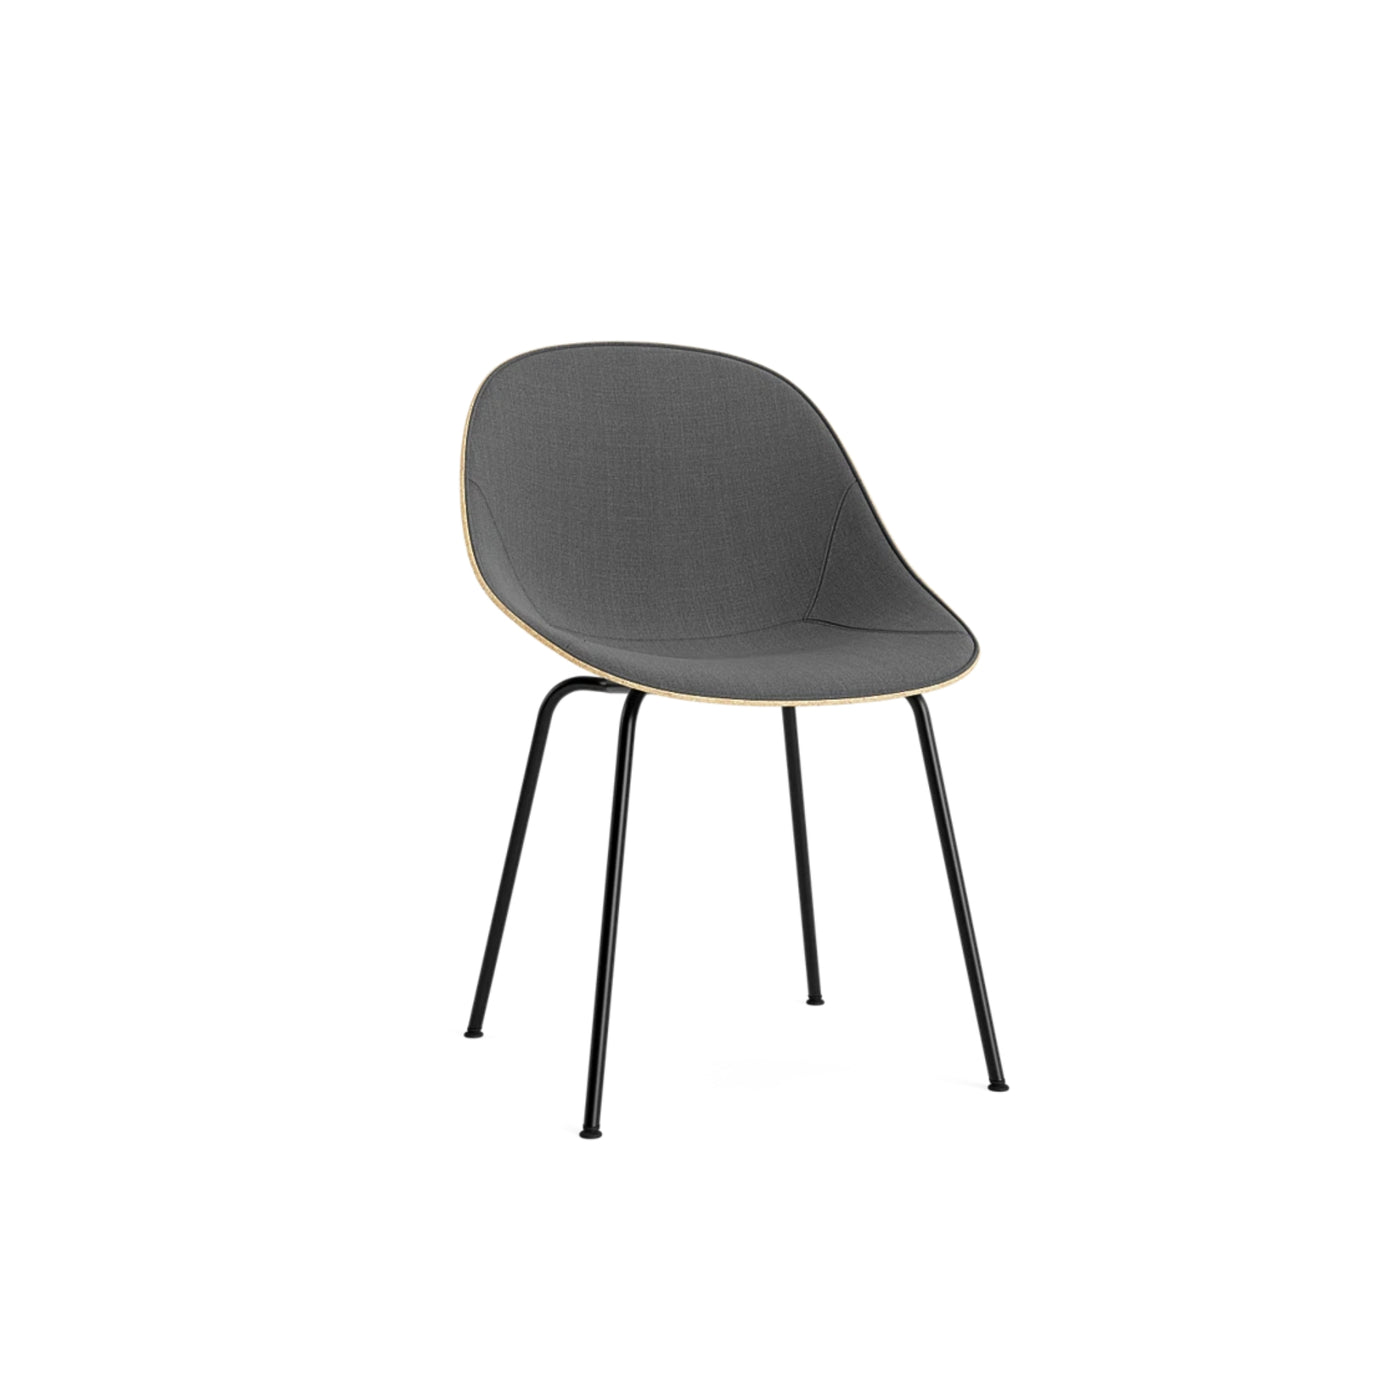 Normann Copenhagen Mat Chair at someday designs. #colour_remix-163